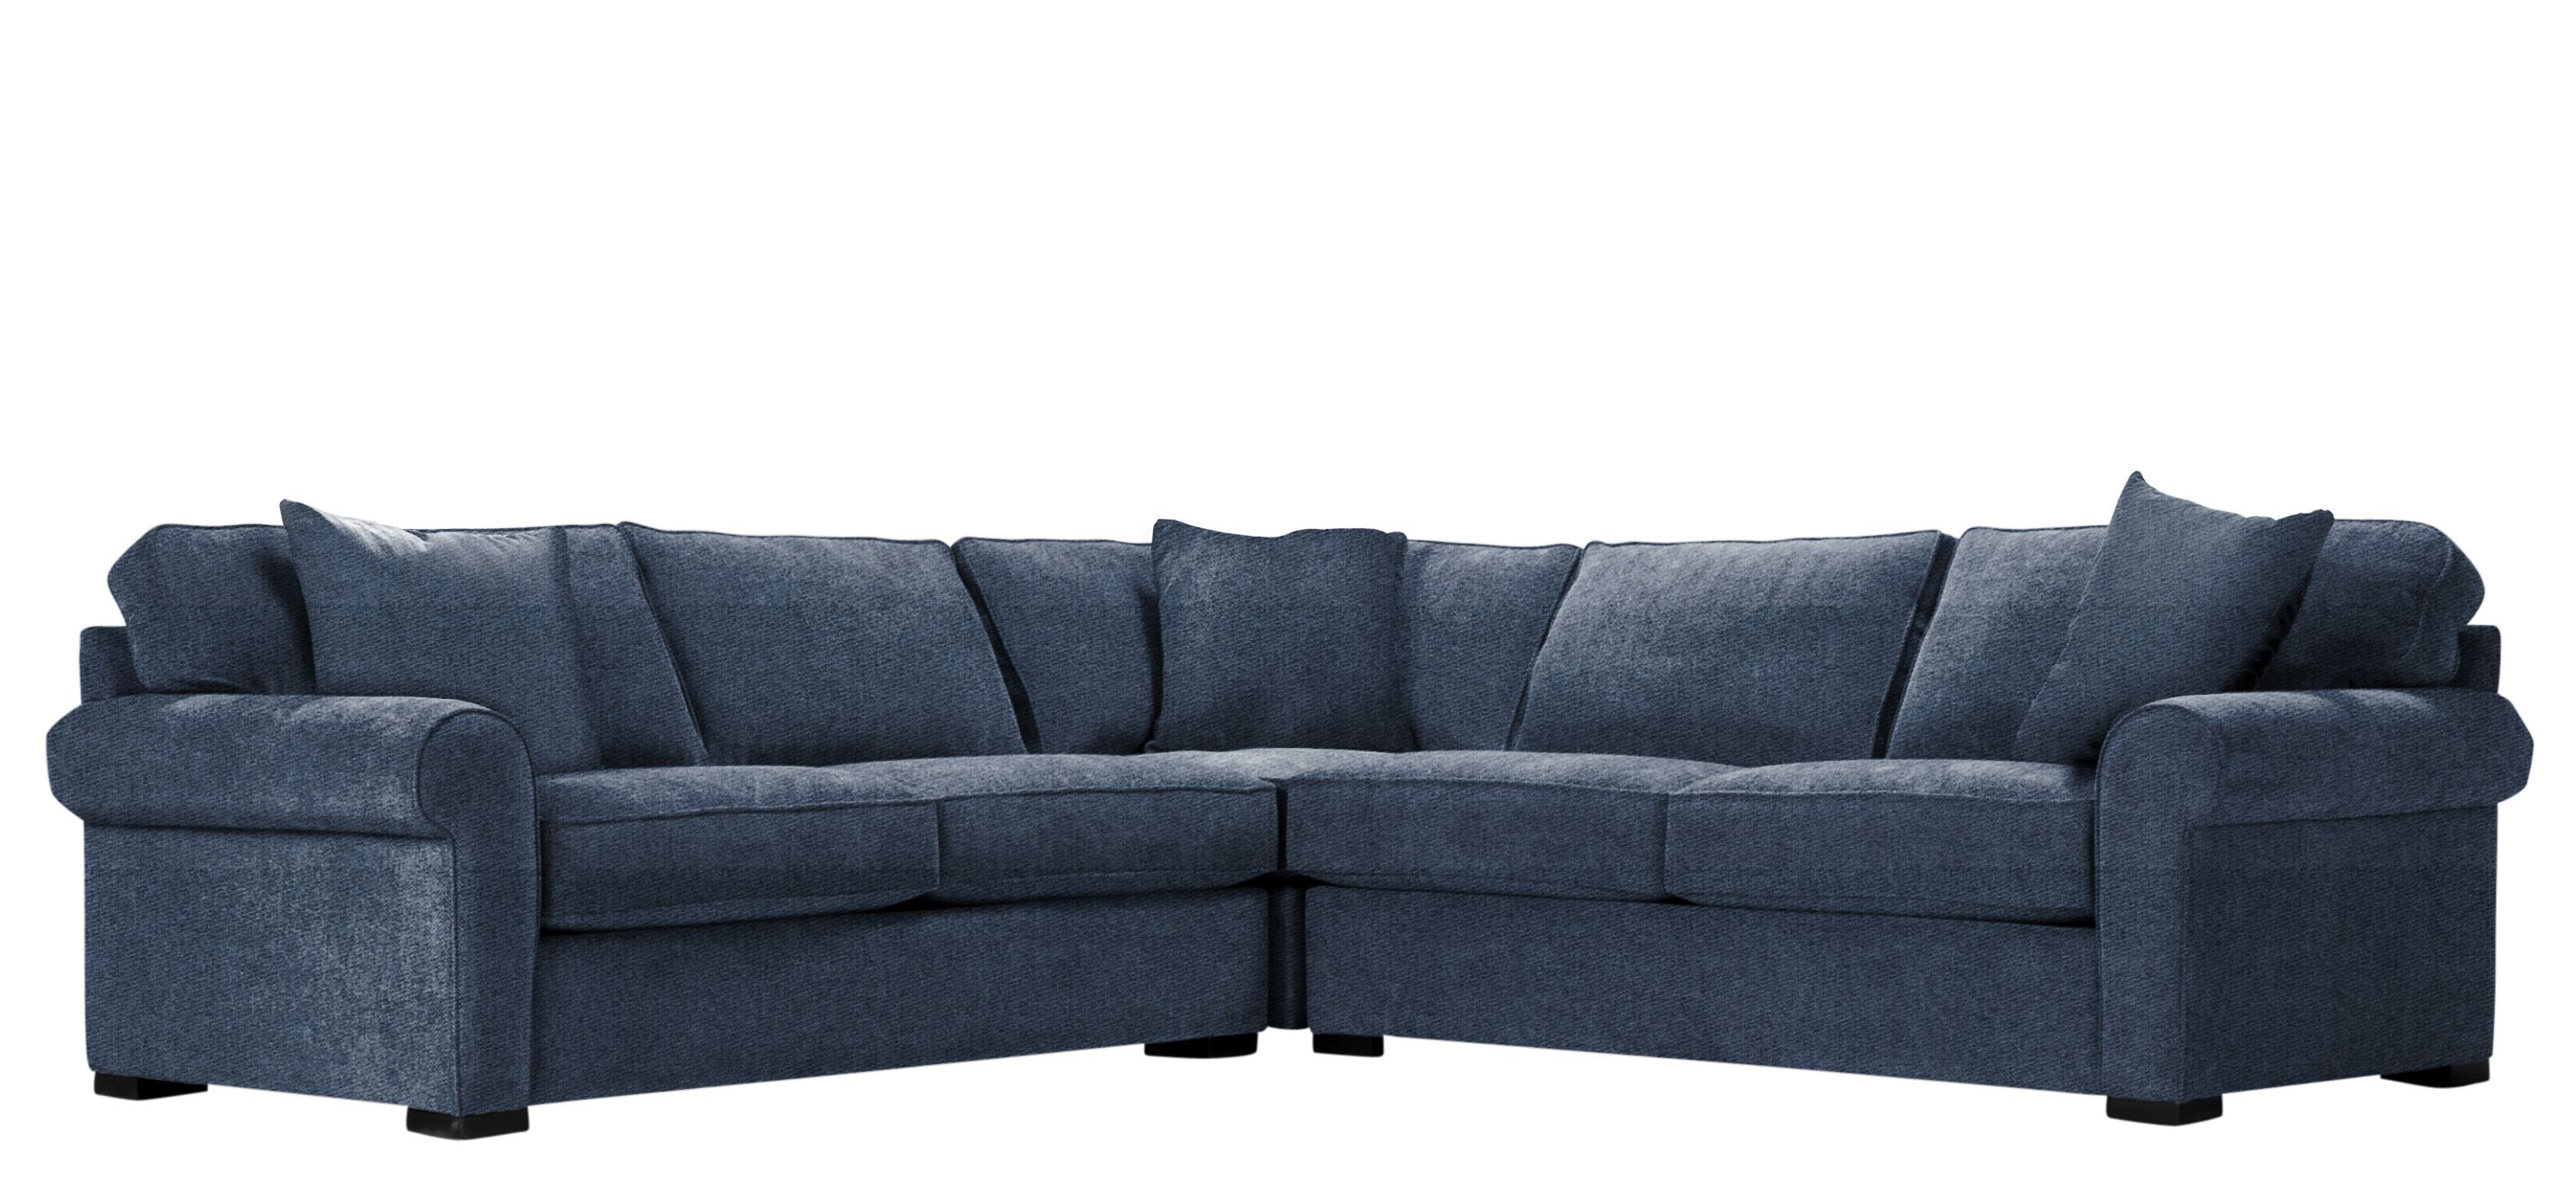 Kipling 3-pc. Symmetrical Sectional Sofa